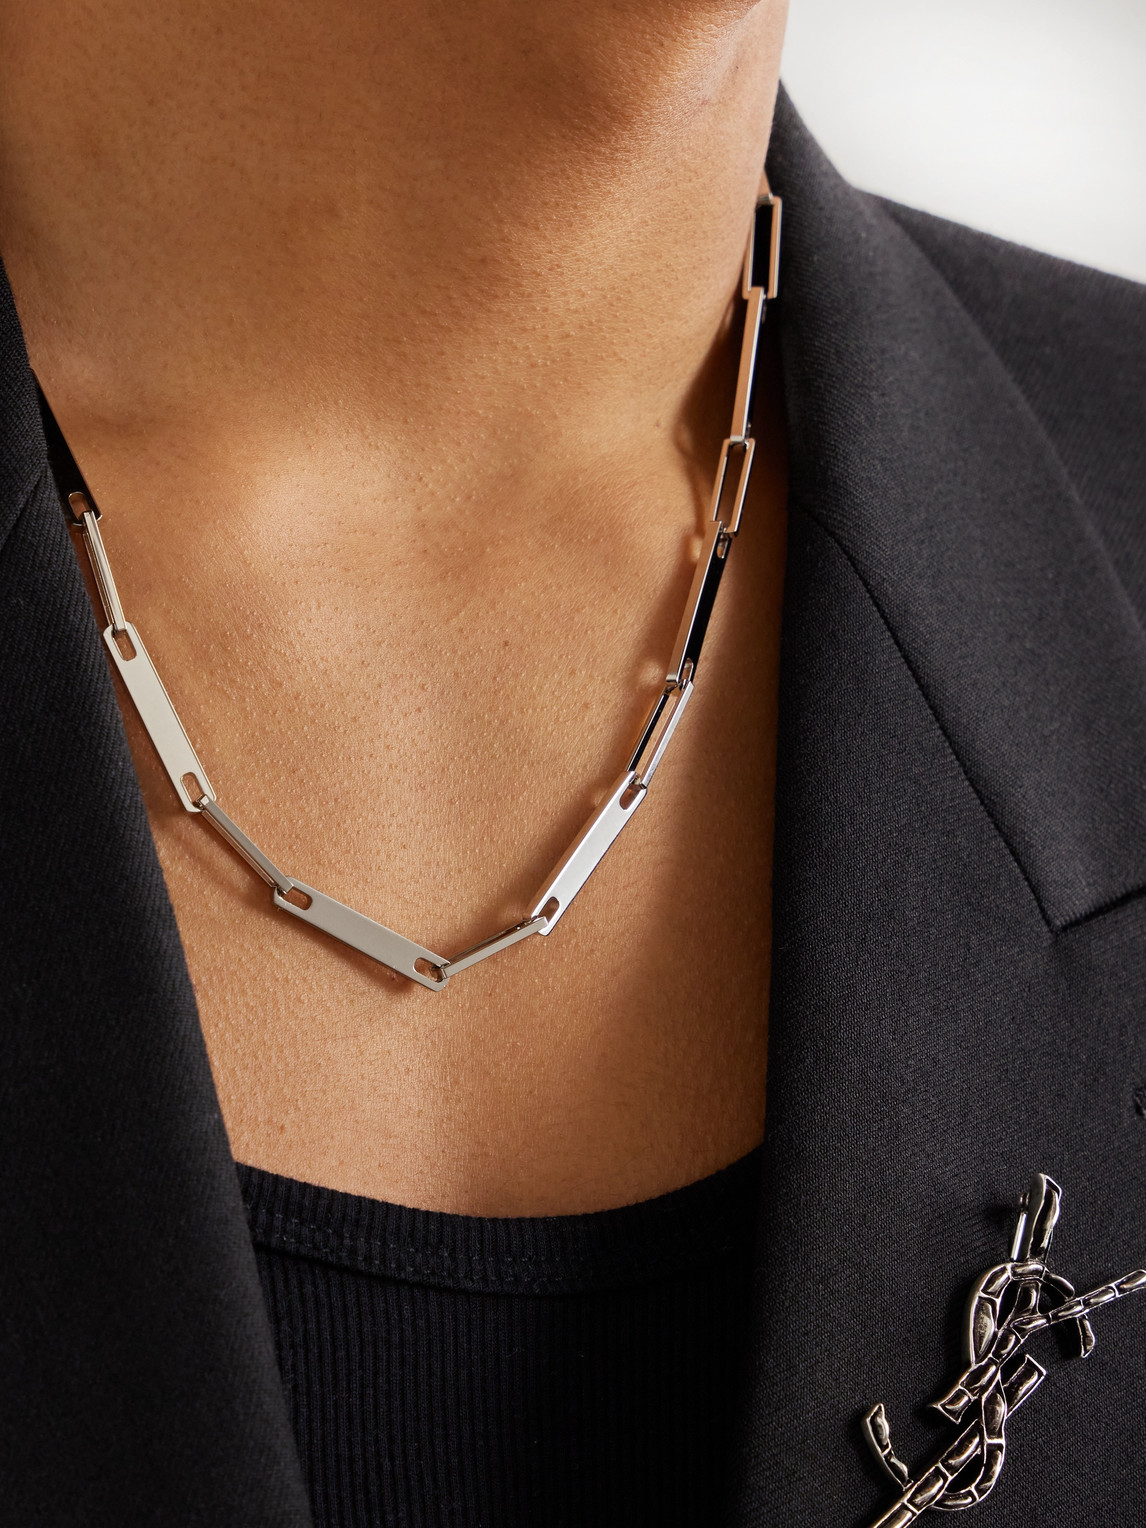 Shop Saint Laurent Silver-tone Chain Necklace